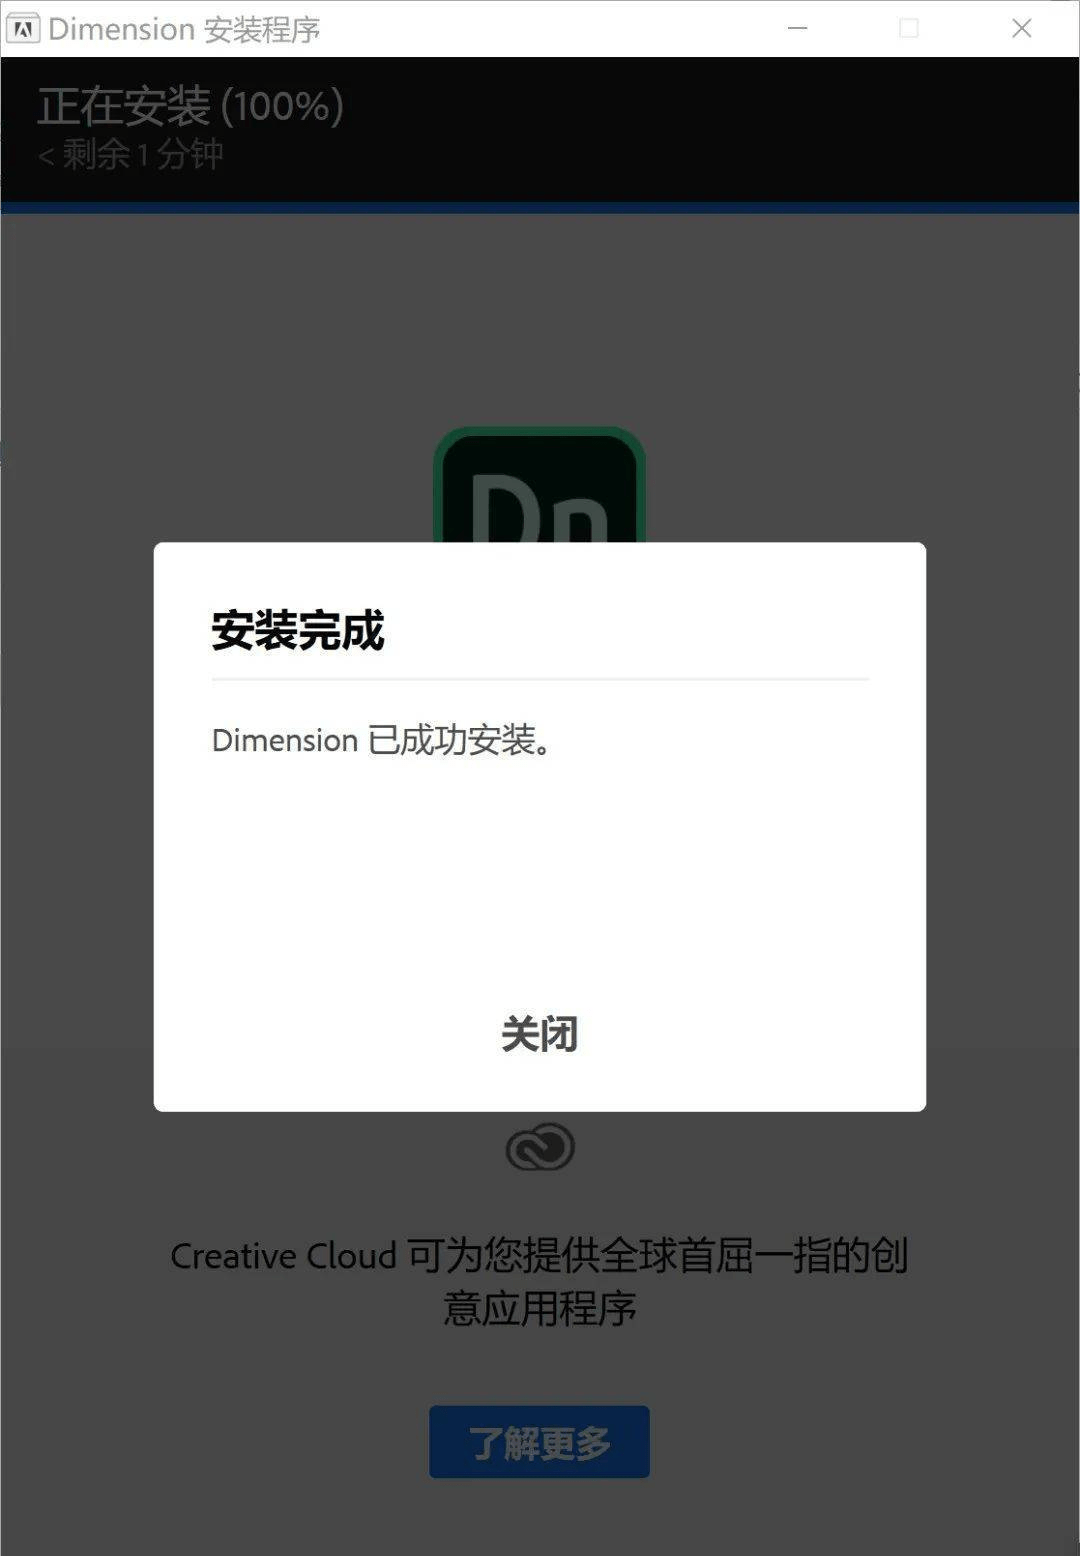 人渣下载免费中文版苹果:Adobe Dimension最新中文版安装激活教程 2020软件免费下载及安装-第6张图片-太平洋在线下载